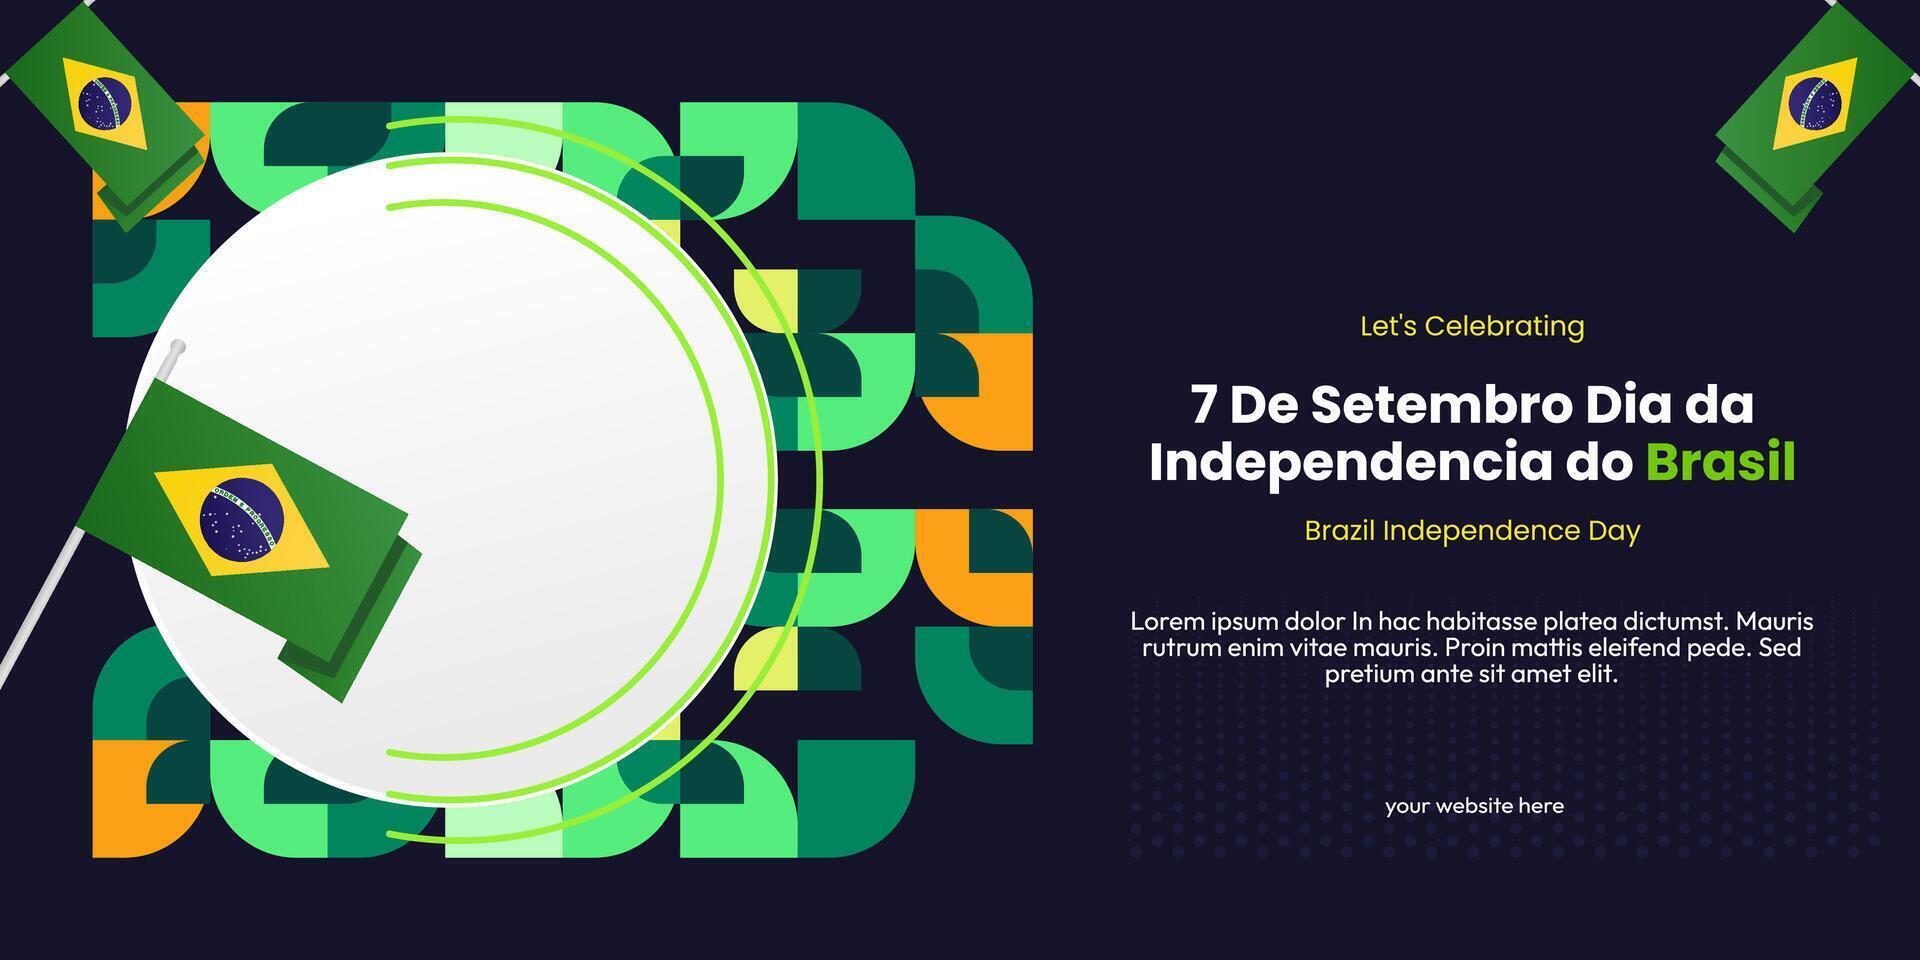 Brasilien Unabhängigkeit Tag Banner im bunt modern geometrisch Stil. National Unabhängigkeit Tag Gruß Karte Startseite mit Typografie. Vektor Illustration zum National Urlaub Feier Party